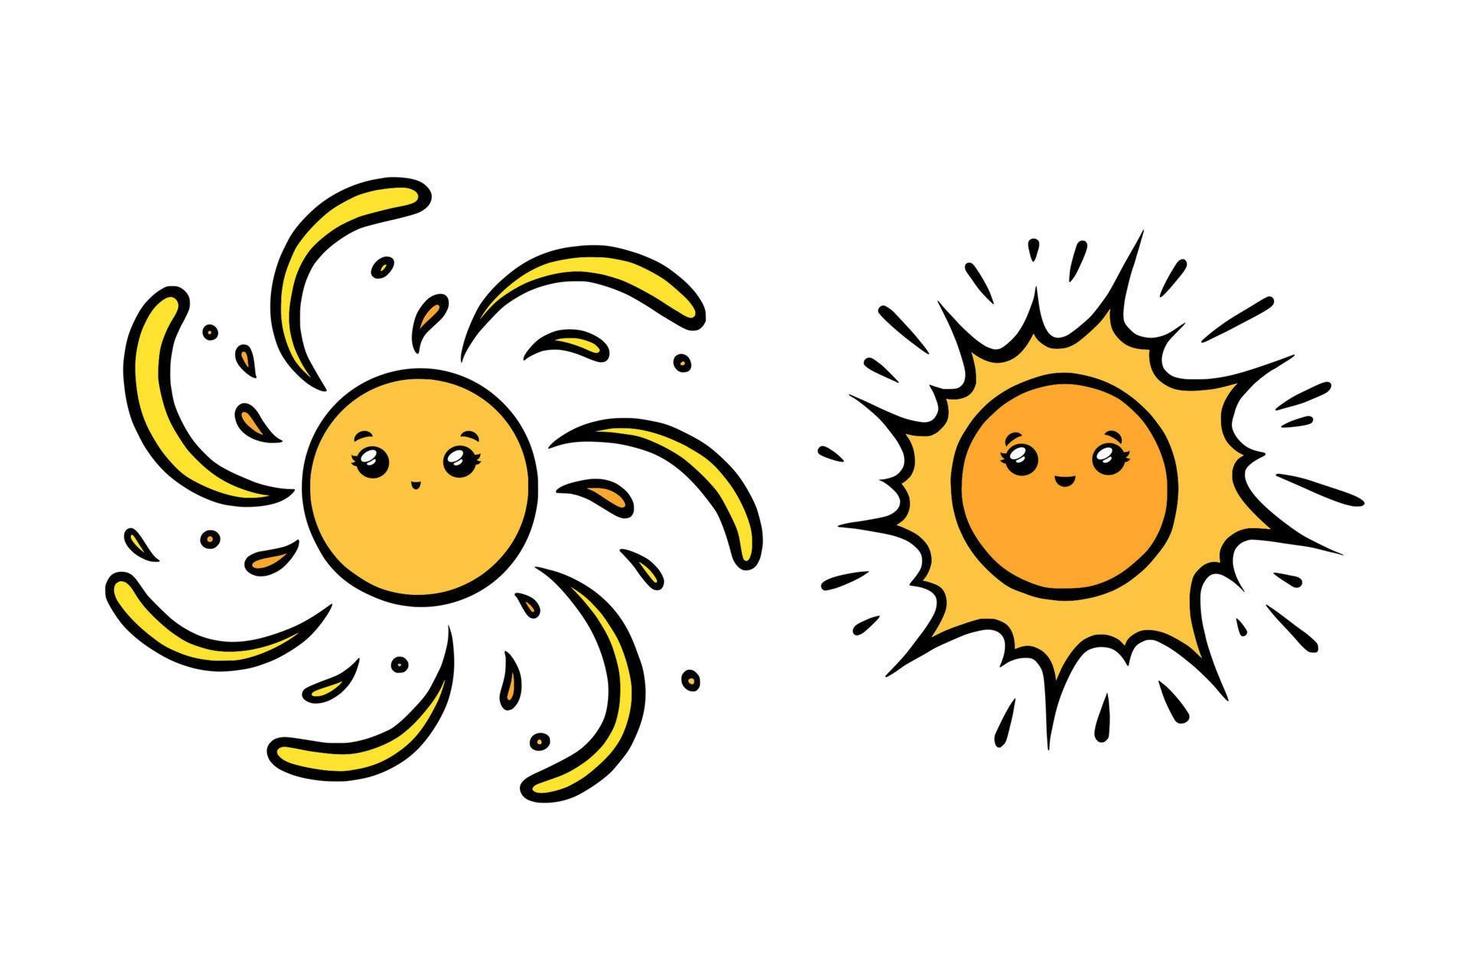 soleils mignons avec des yeux et des sourires. soleil jaune visages souriants dans un style doodle. illustration vectorielle noir et blanc vecteur